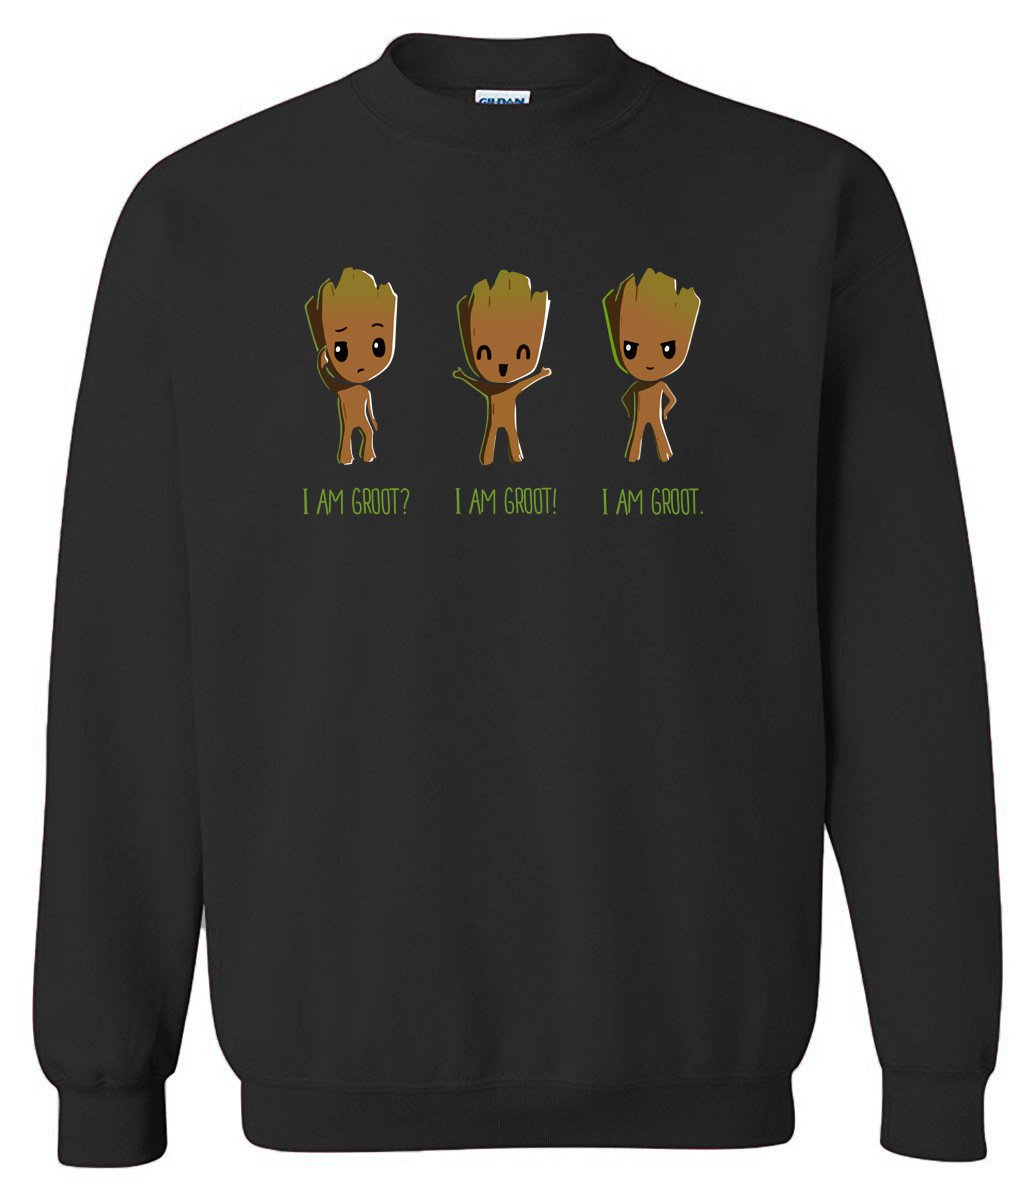 Men's Sweatshirts - Men's Sweatshirt Series I AM GROOT Icon Fleece Sweatshirt